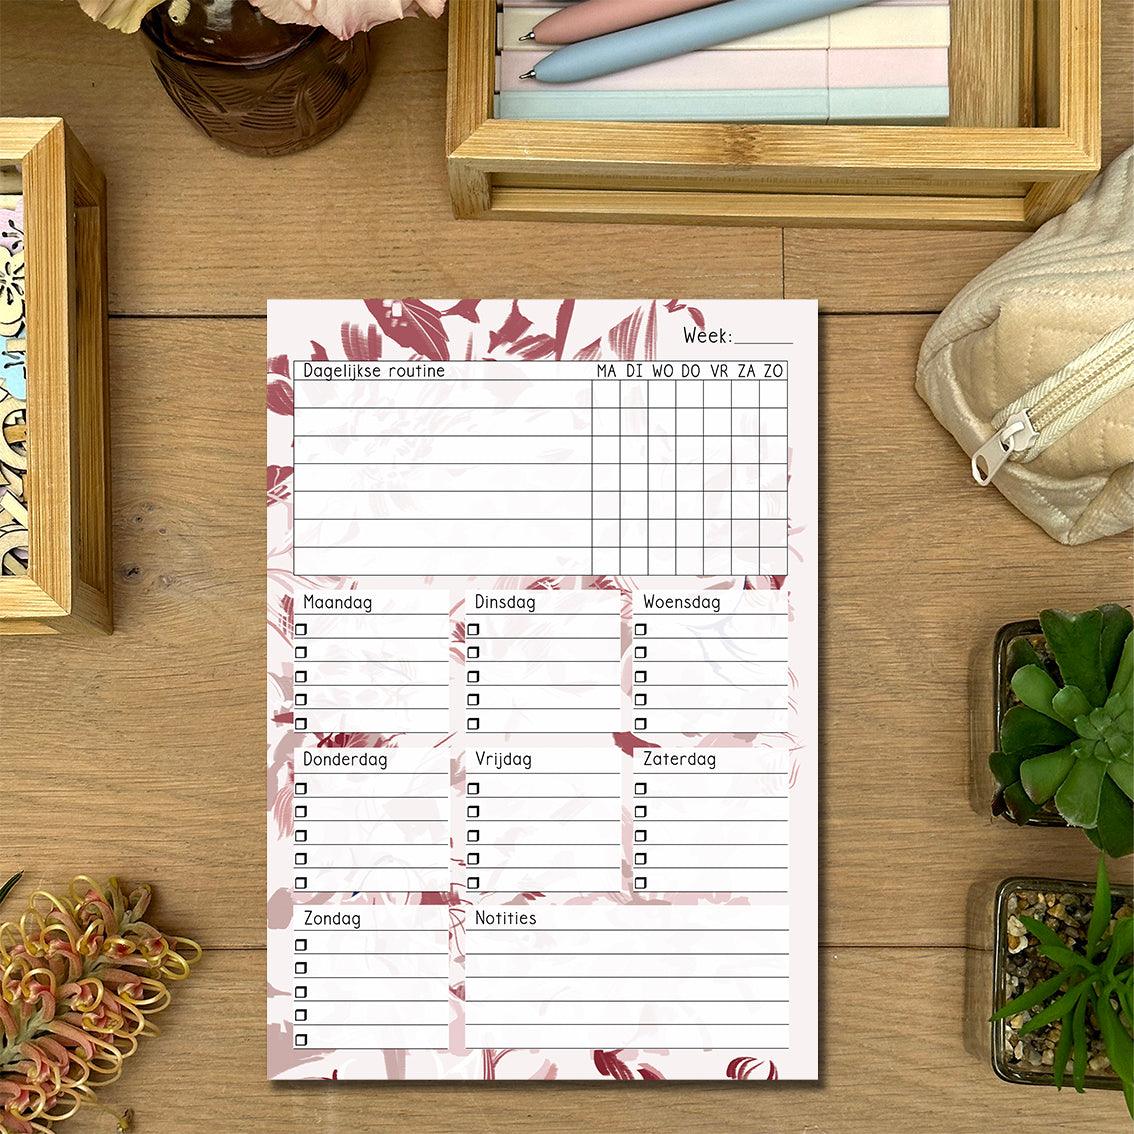 Blanco Schema - Flowers: Verfraai je weekplanning met dit notitieblok, gedecoreerd met levendige bloemen. Organiseer je weektaken en laat je inspireren door de natuurlijke schoonheid van dit notitieblok.